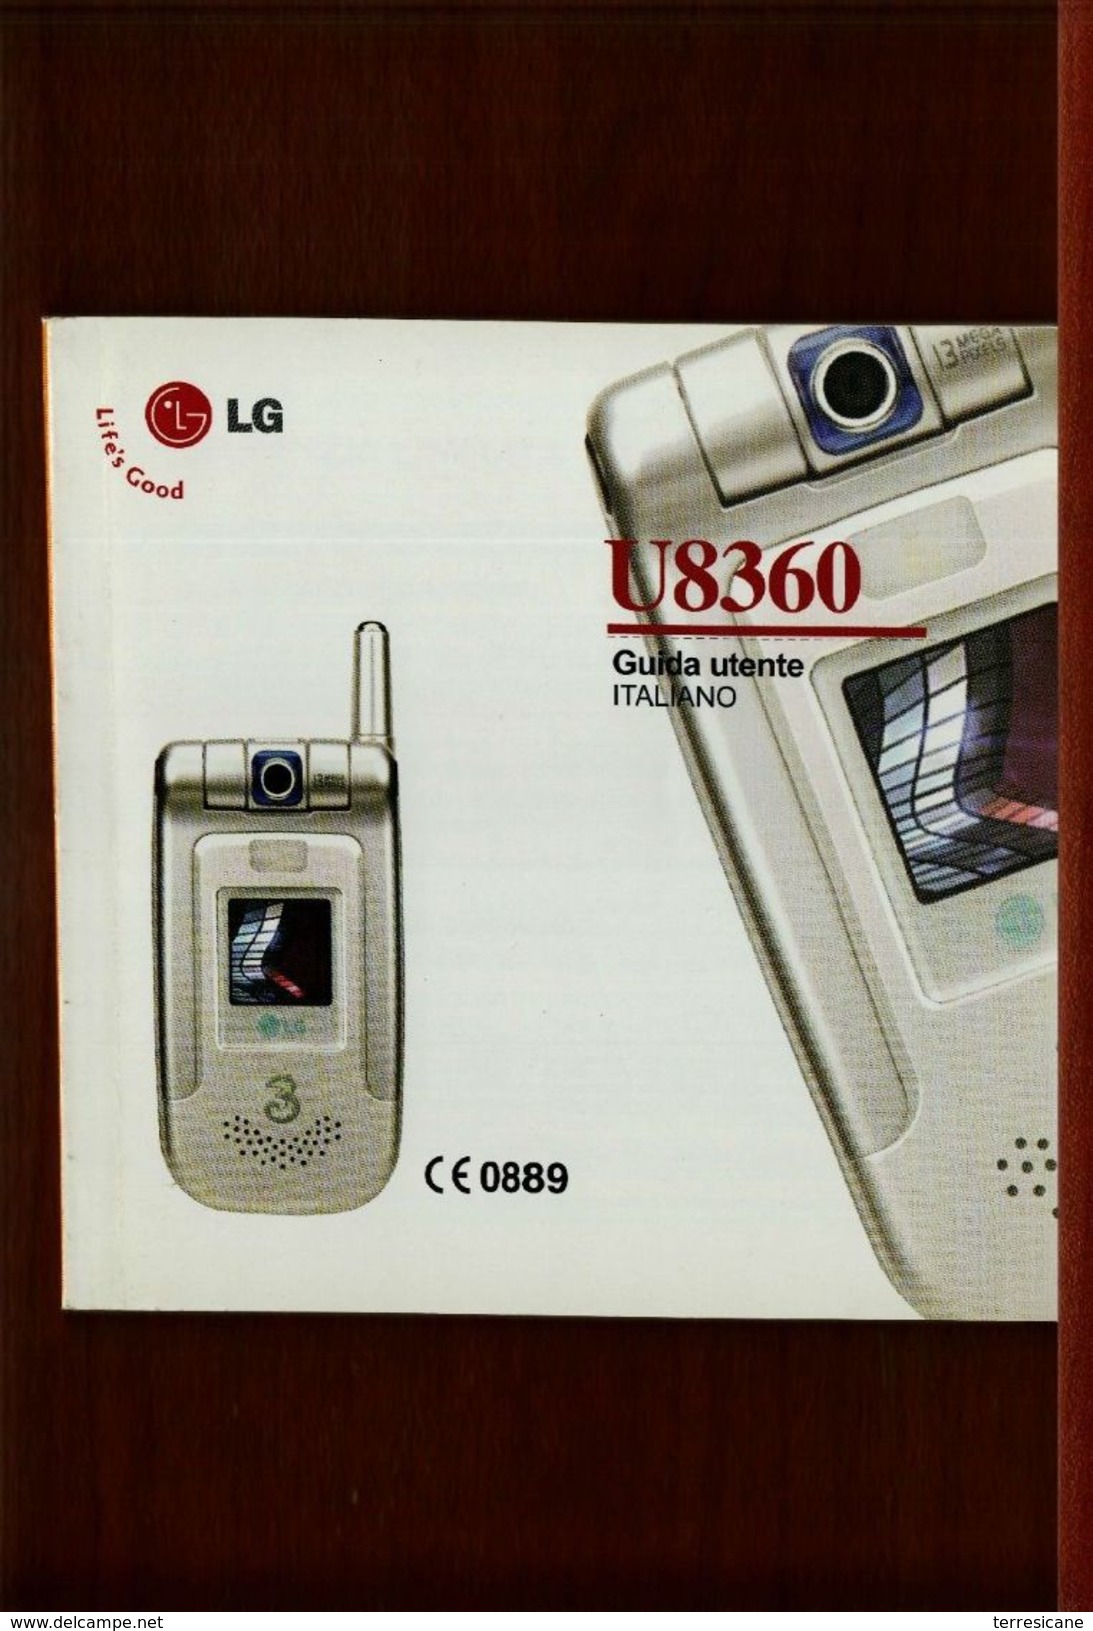 X LG U8360 GUIDA UTENTE ITALIANO - Telefonia